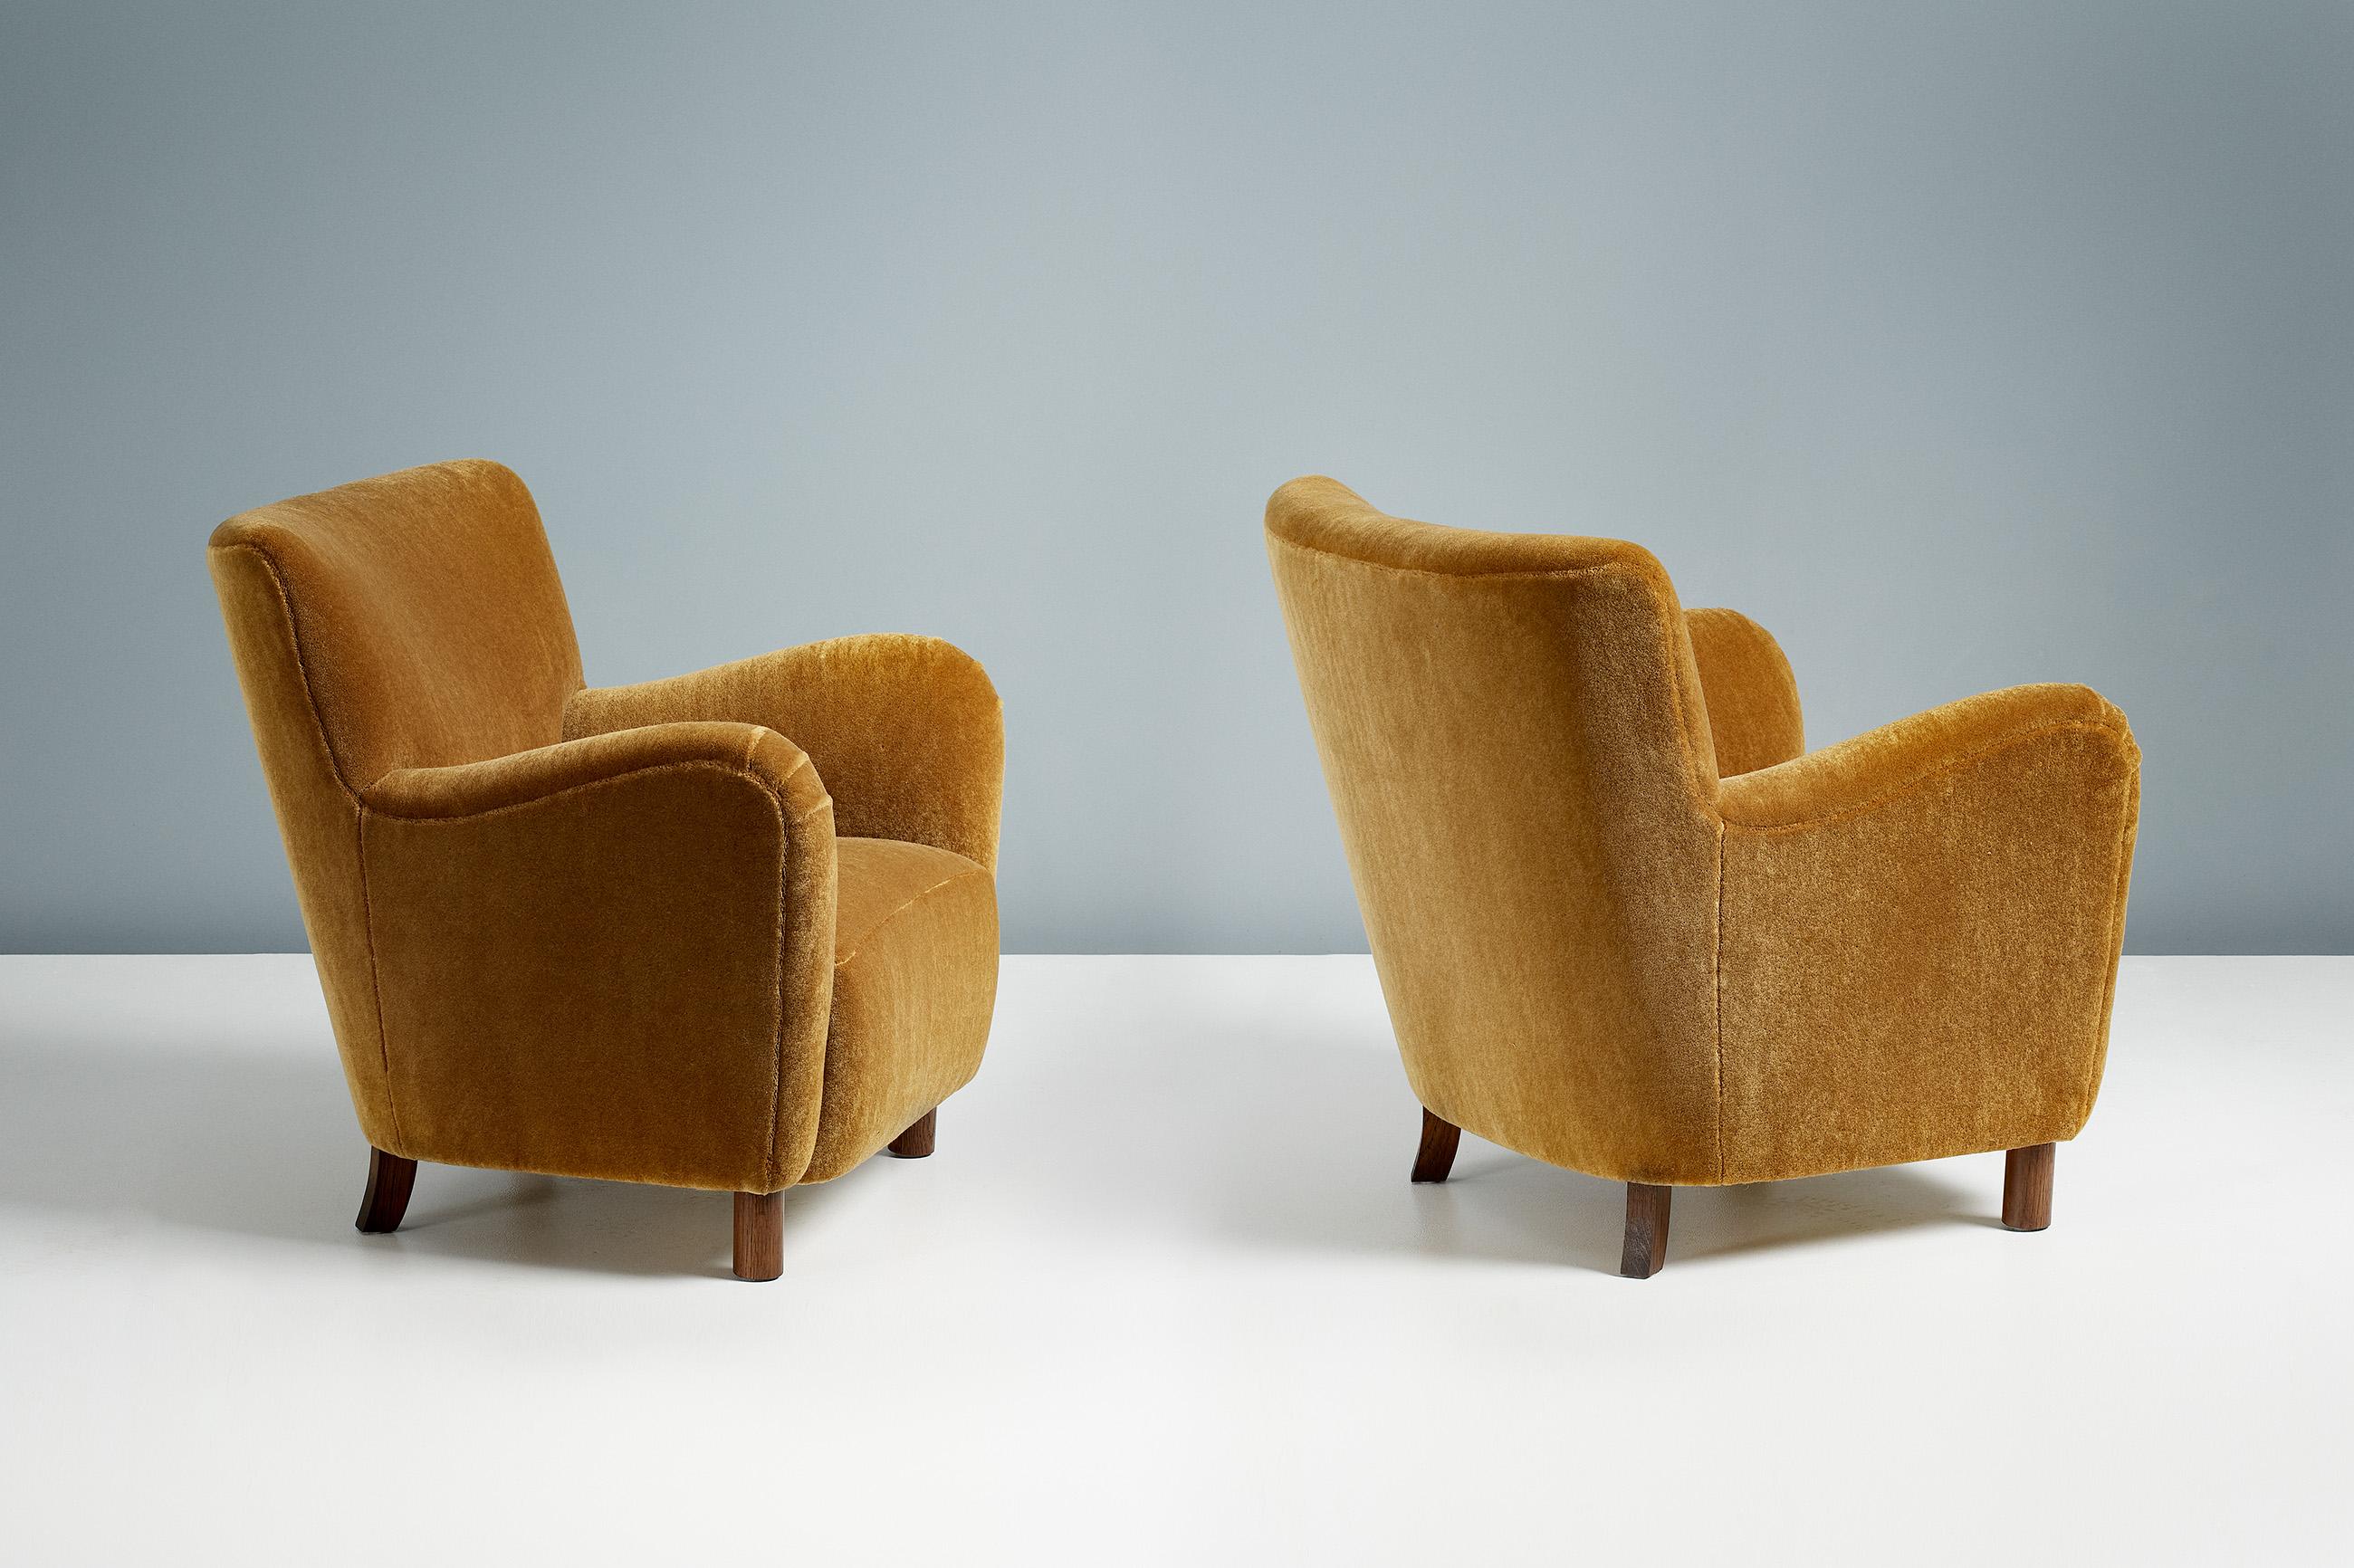 Dagmar design

Chaise longue modèle 54

Une paire de chaises longues sur mesure, conçues et fabriquées à la main dans nos ateliers de Londres, avec des matériaux de la plus haute qualité. La chaise 54 est disponible sur commande dans une gamme de